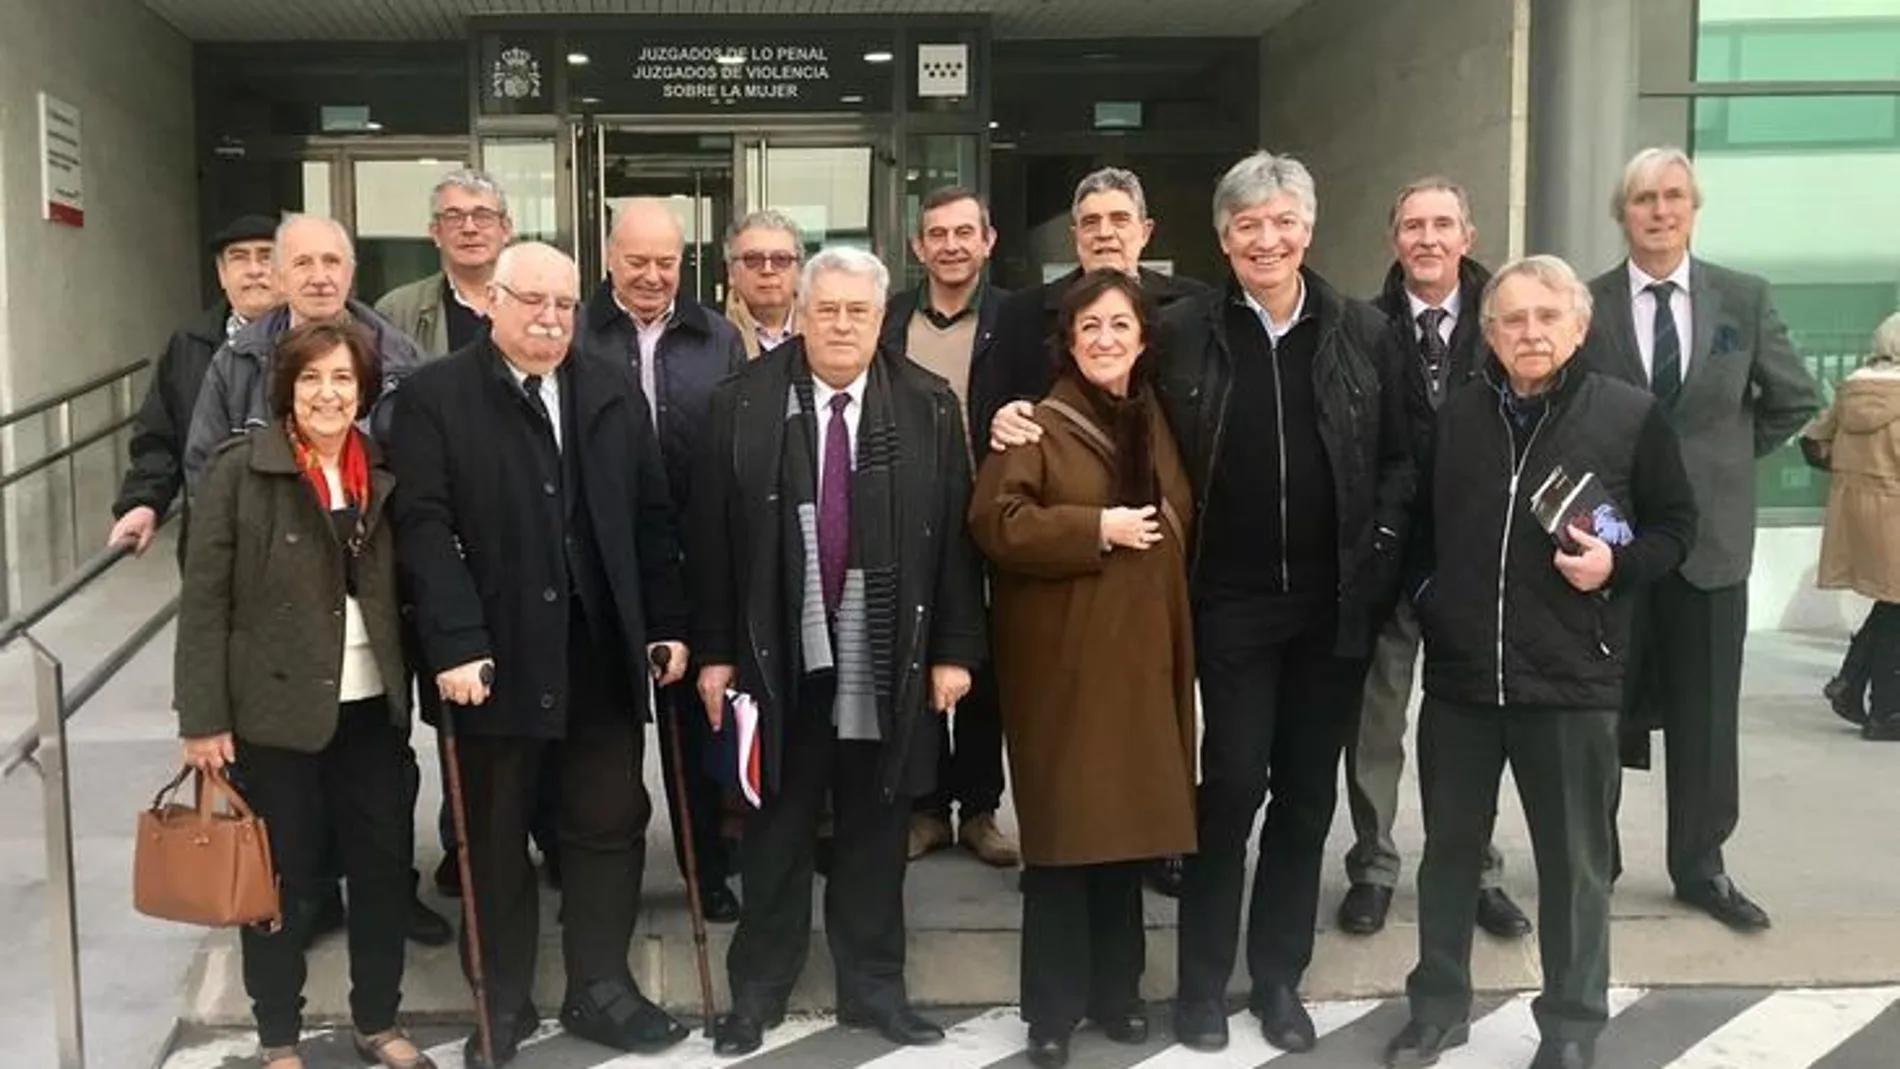 El demandante a la salida del Juzgado de lo Penal nº 11 de Madrid tras ganar el juicio